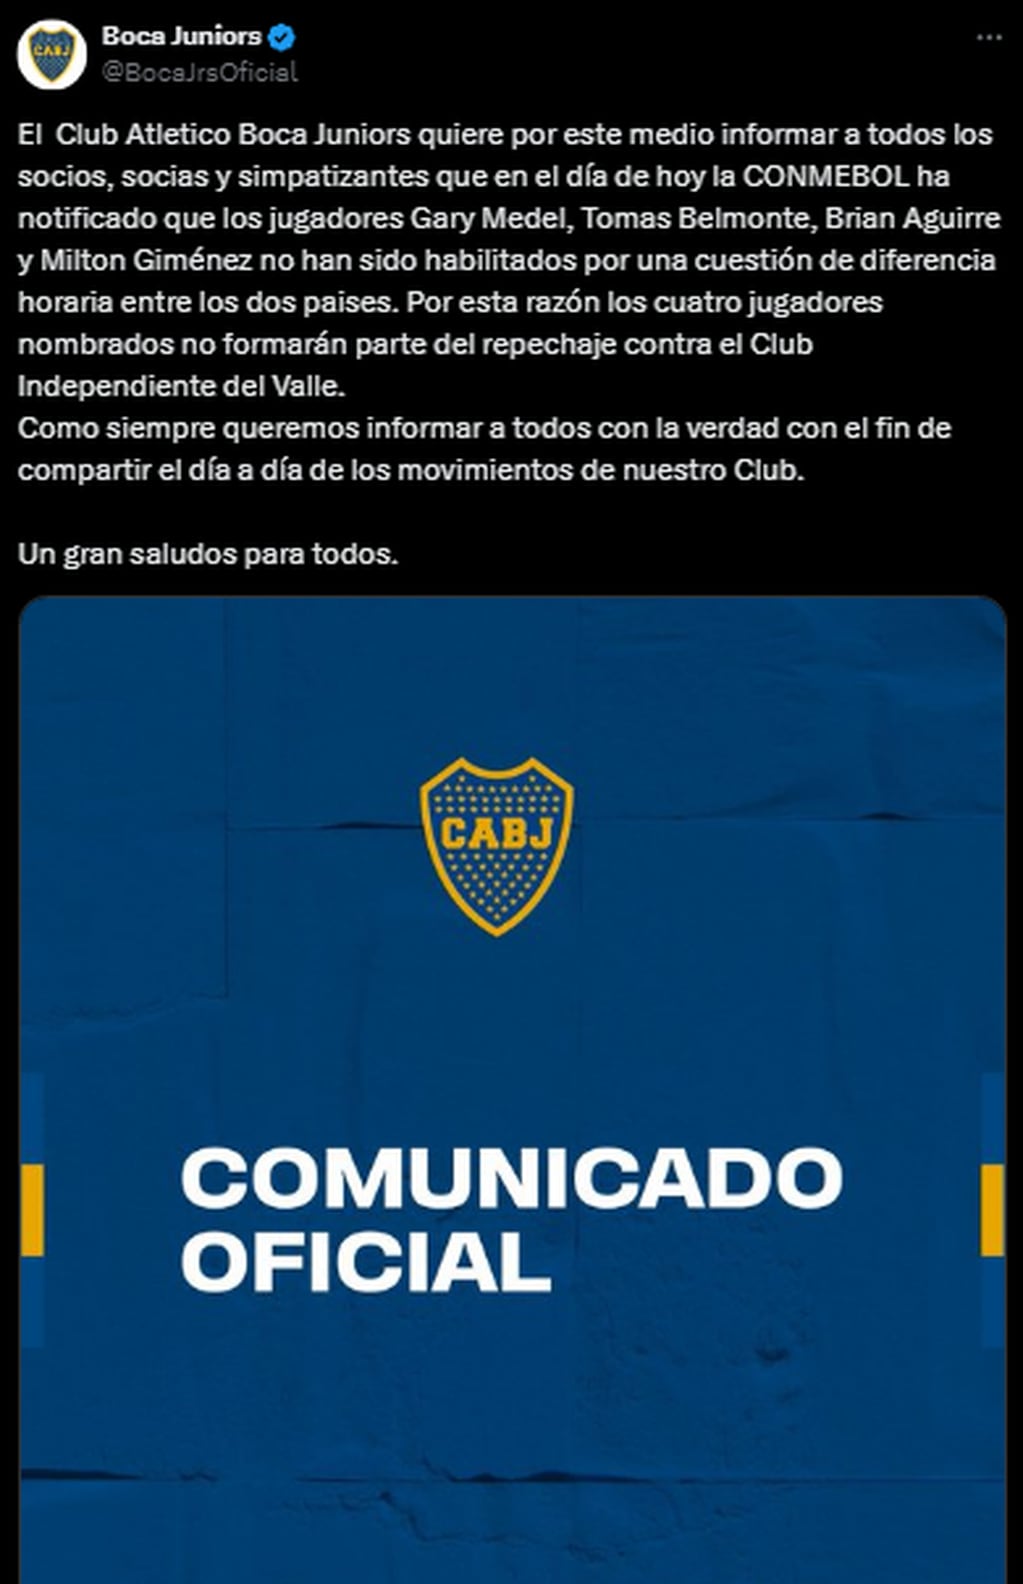 Comunicado de Boca Juniors